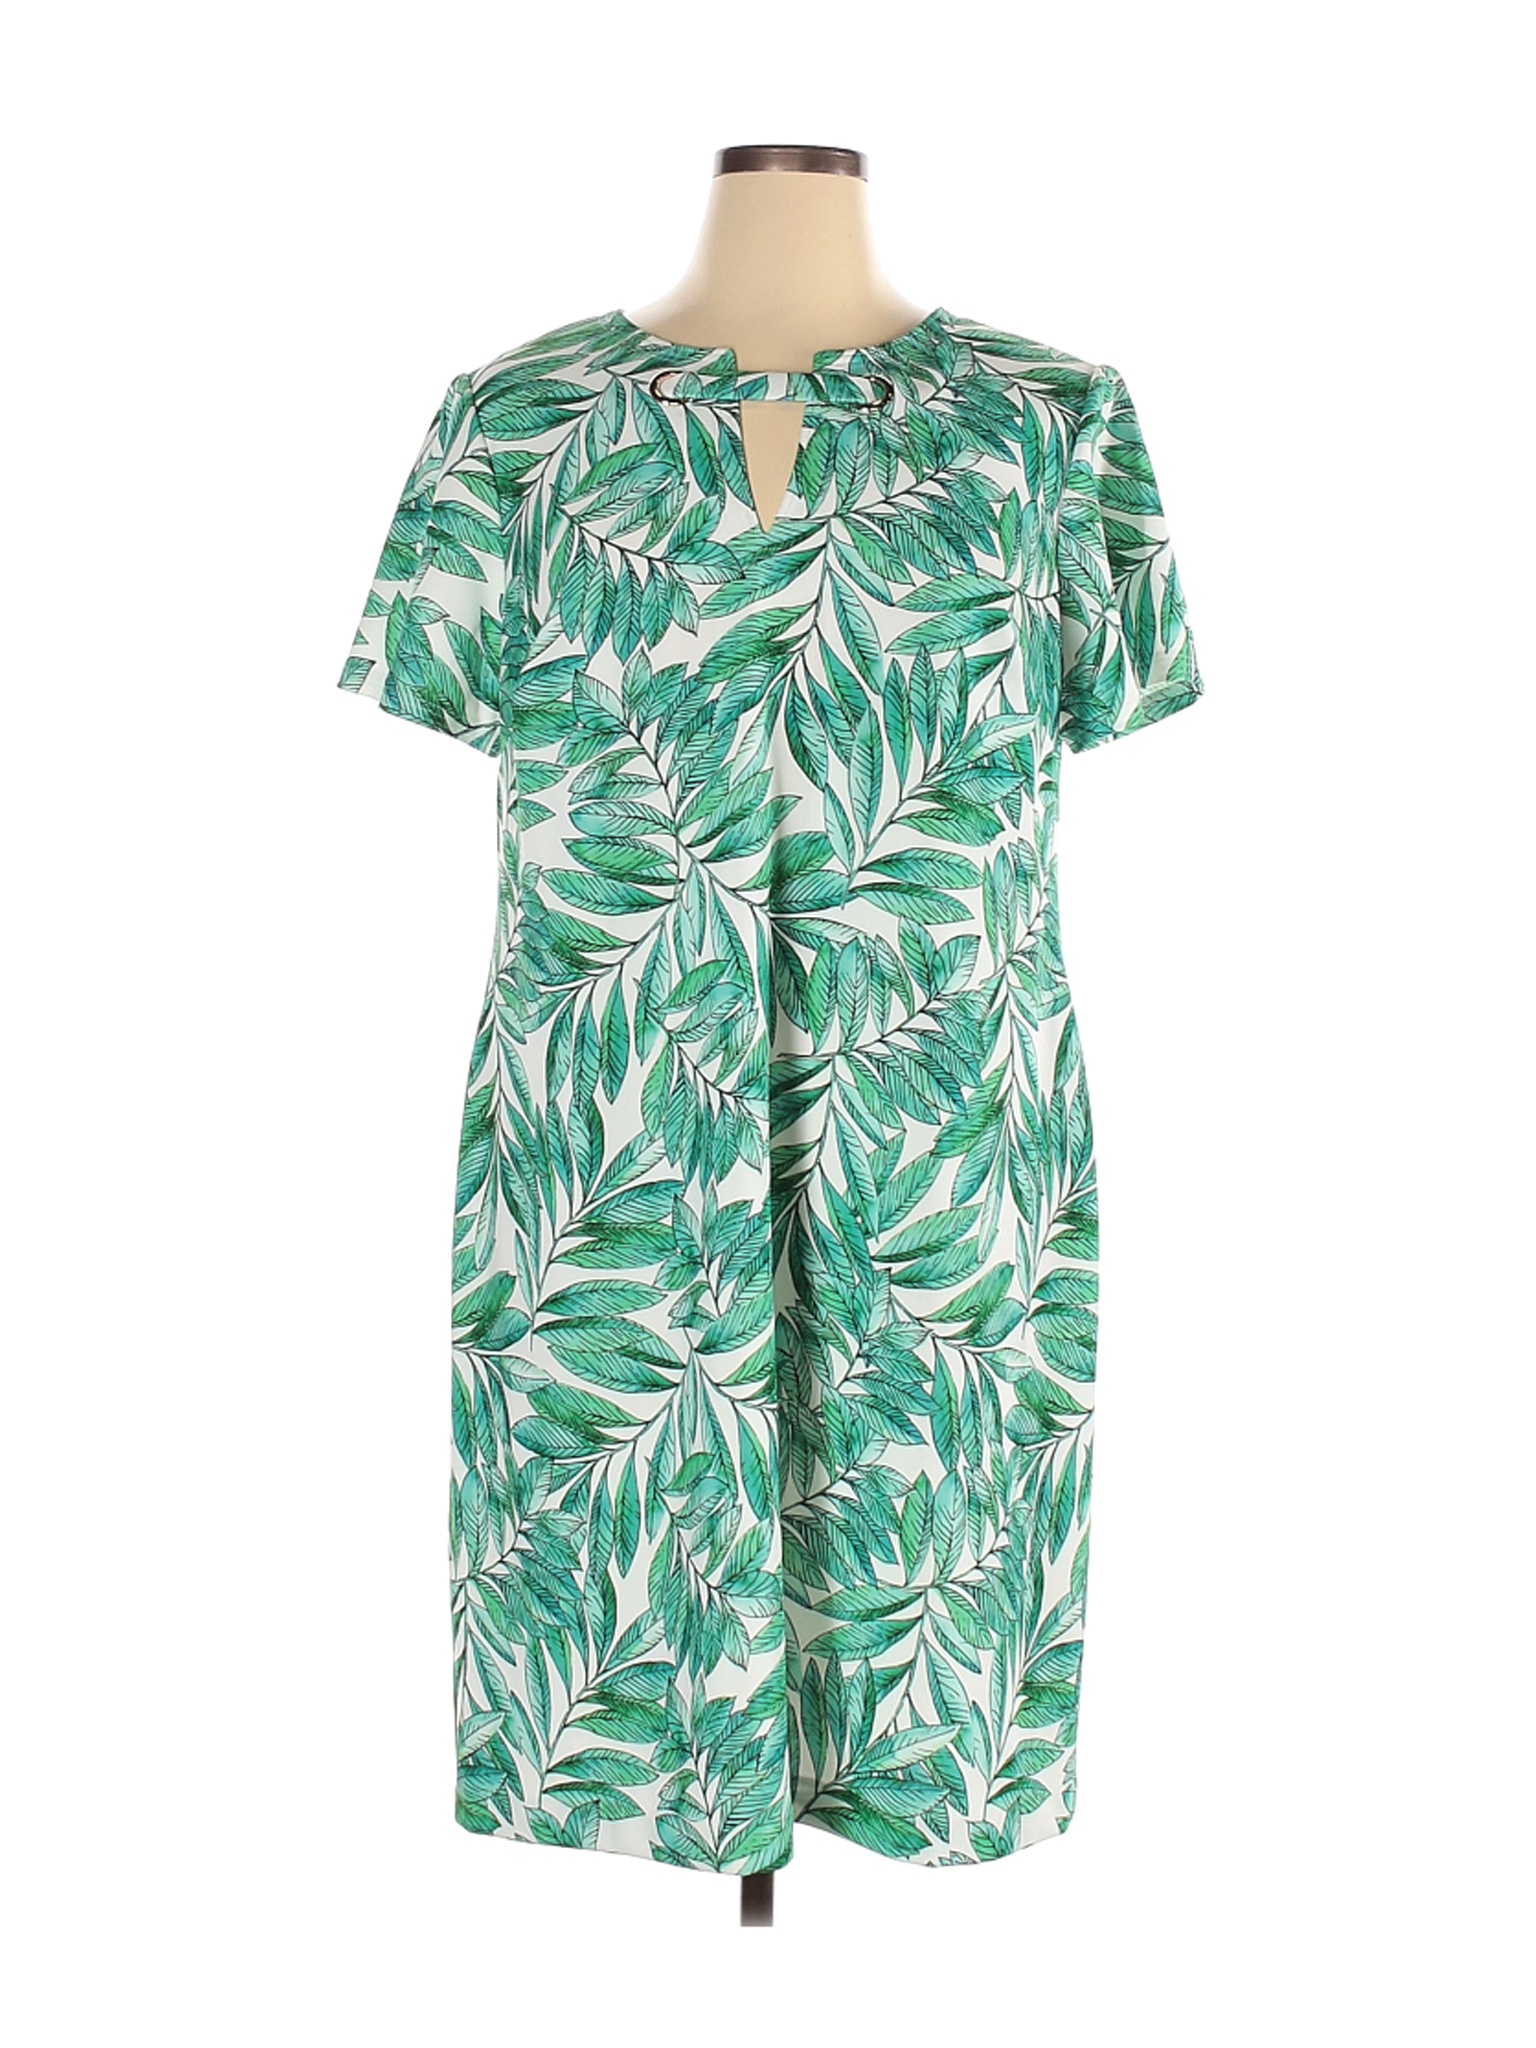 Tommy Hilfiger Women Green Casual Dress 16 | eBay